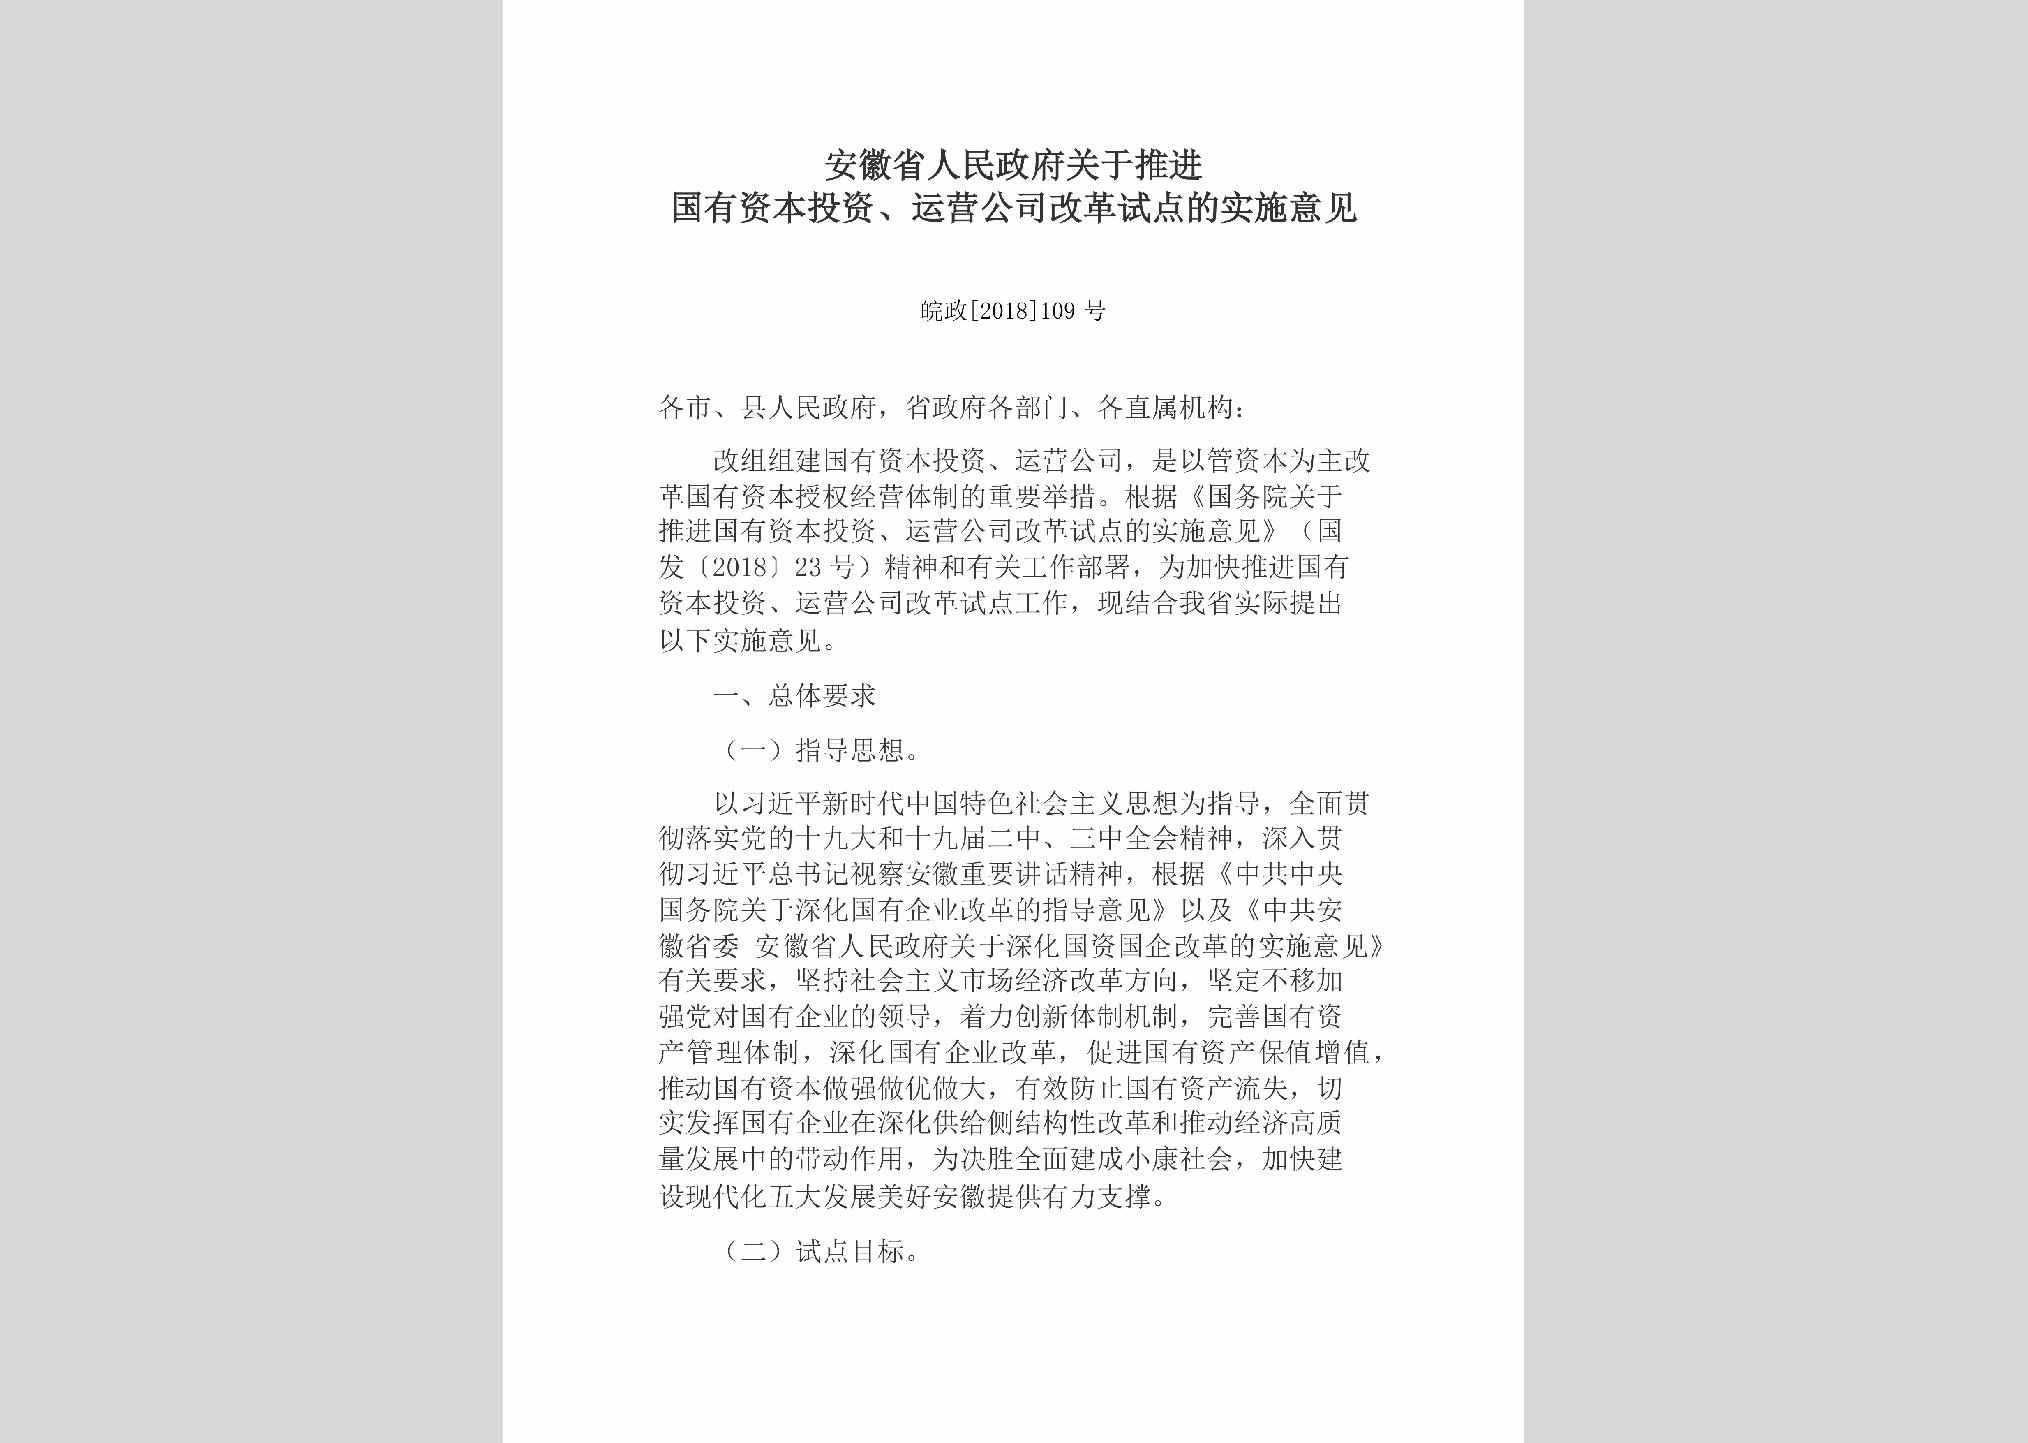 皖政[2018]109号：安徽省人民政府关于推进国有资本投资、运营公司改革试点的实施意见